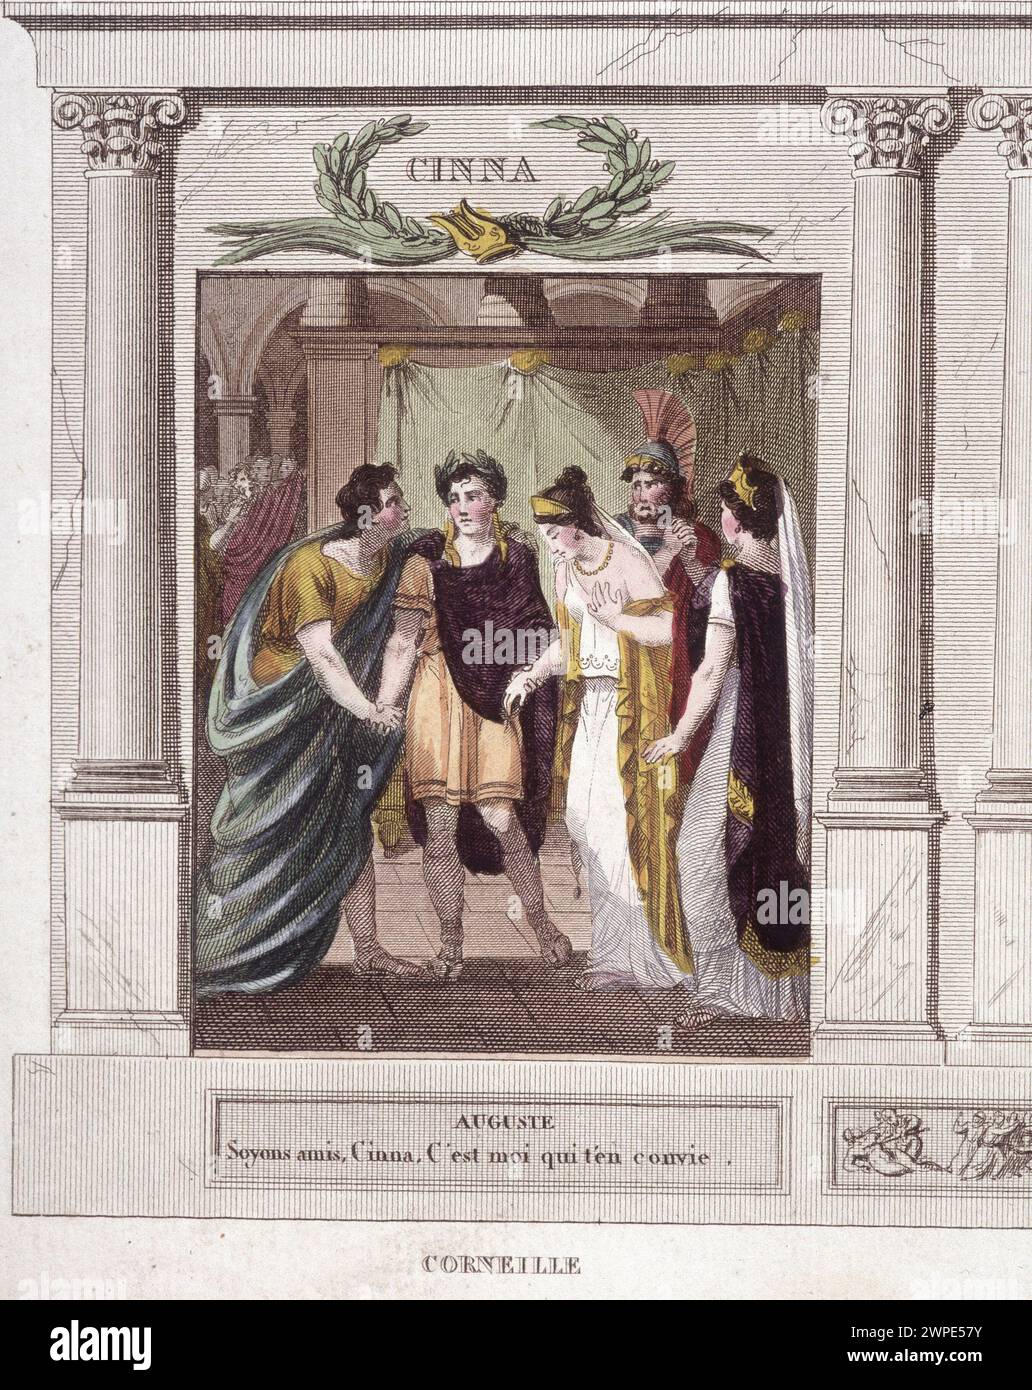 Szene und Dialog von Augustus in Cinna in 'Cinna or the Clemency of Augustus', Tragödie von Corneille, 1642 Stockfoto